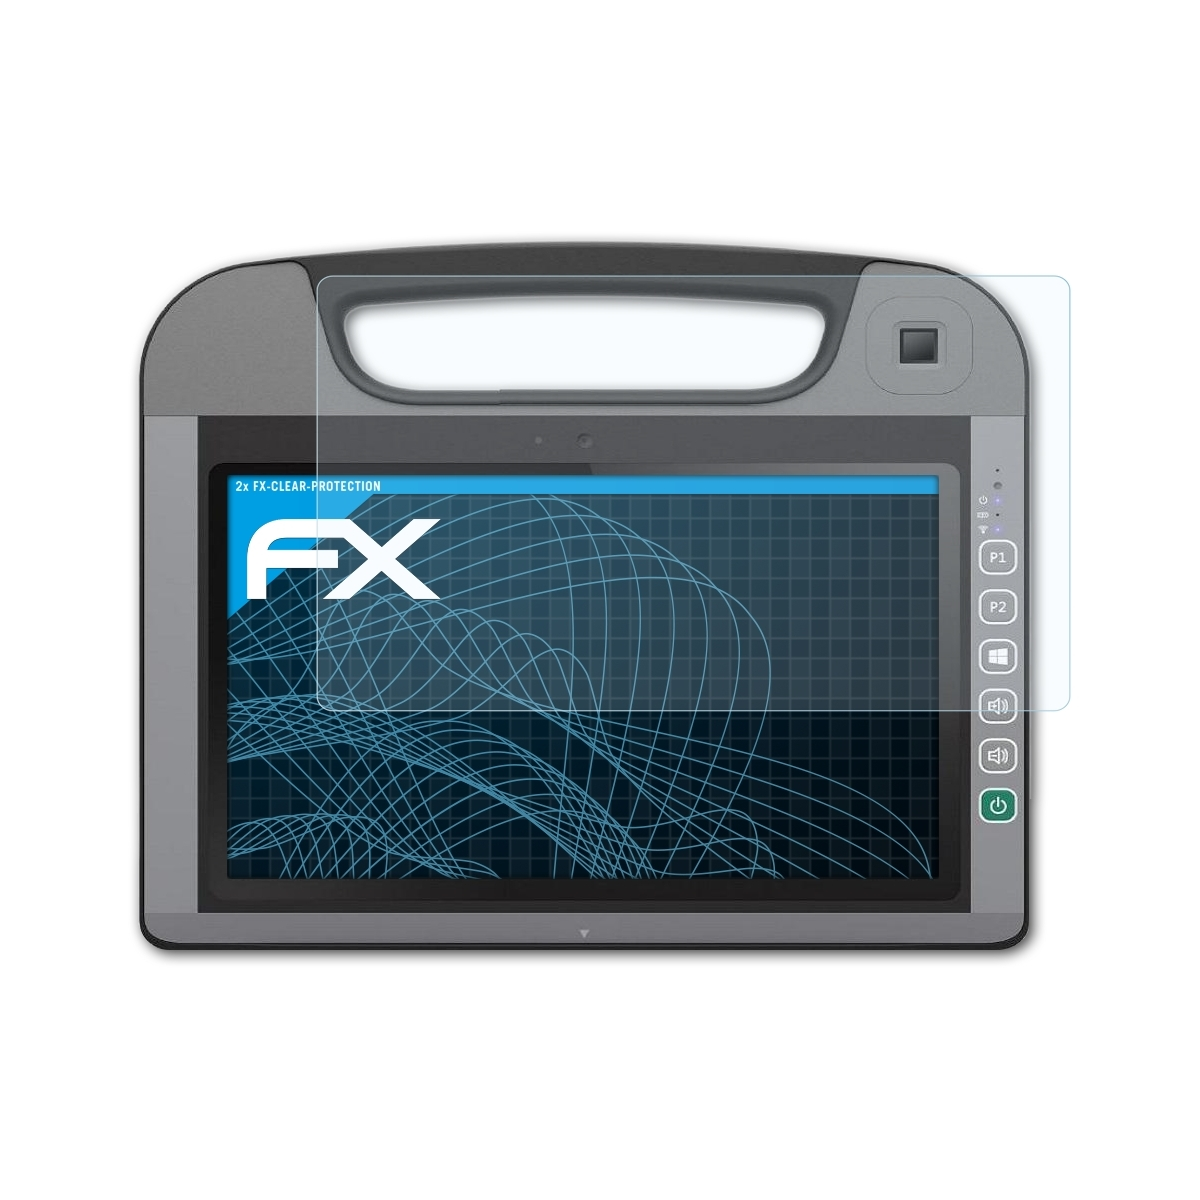 ATFOLIX 2x FX-Clear Displayschutz(für Getac RX10)